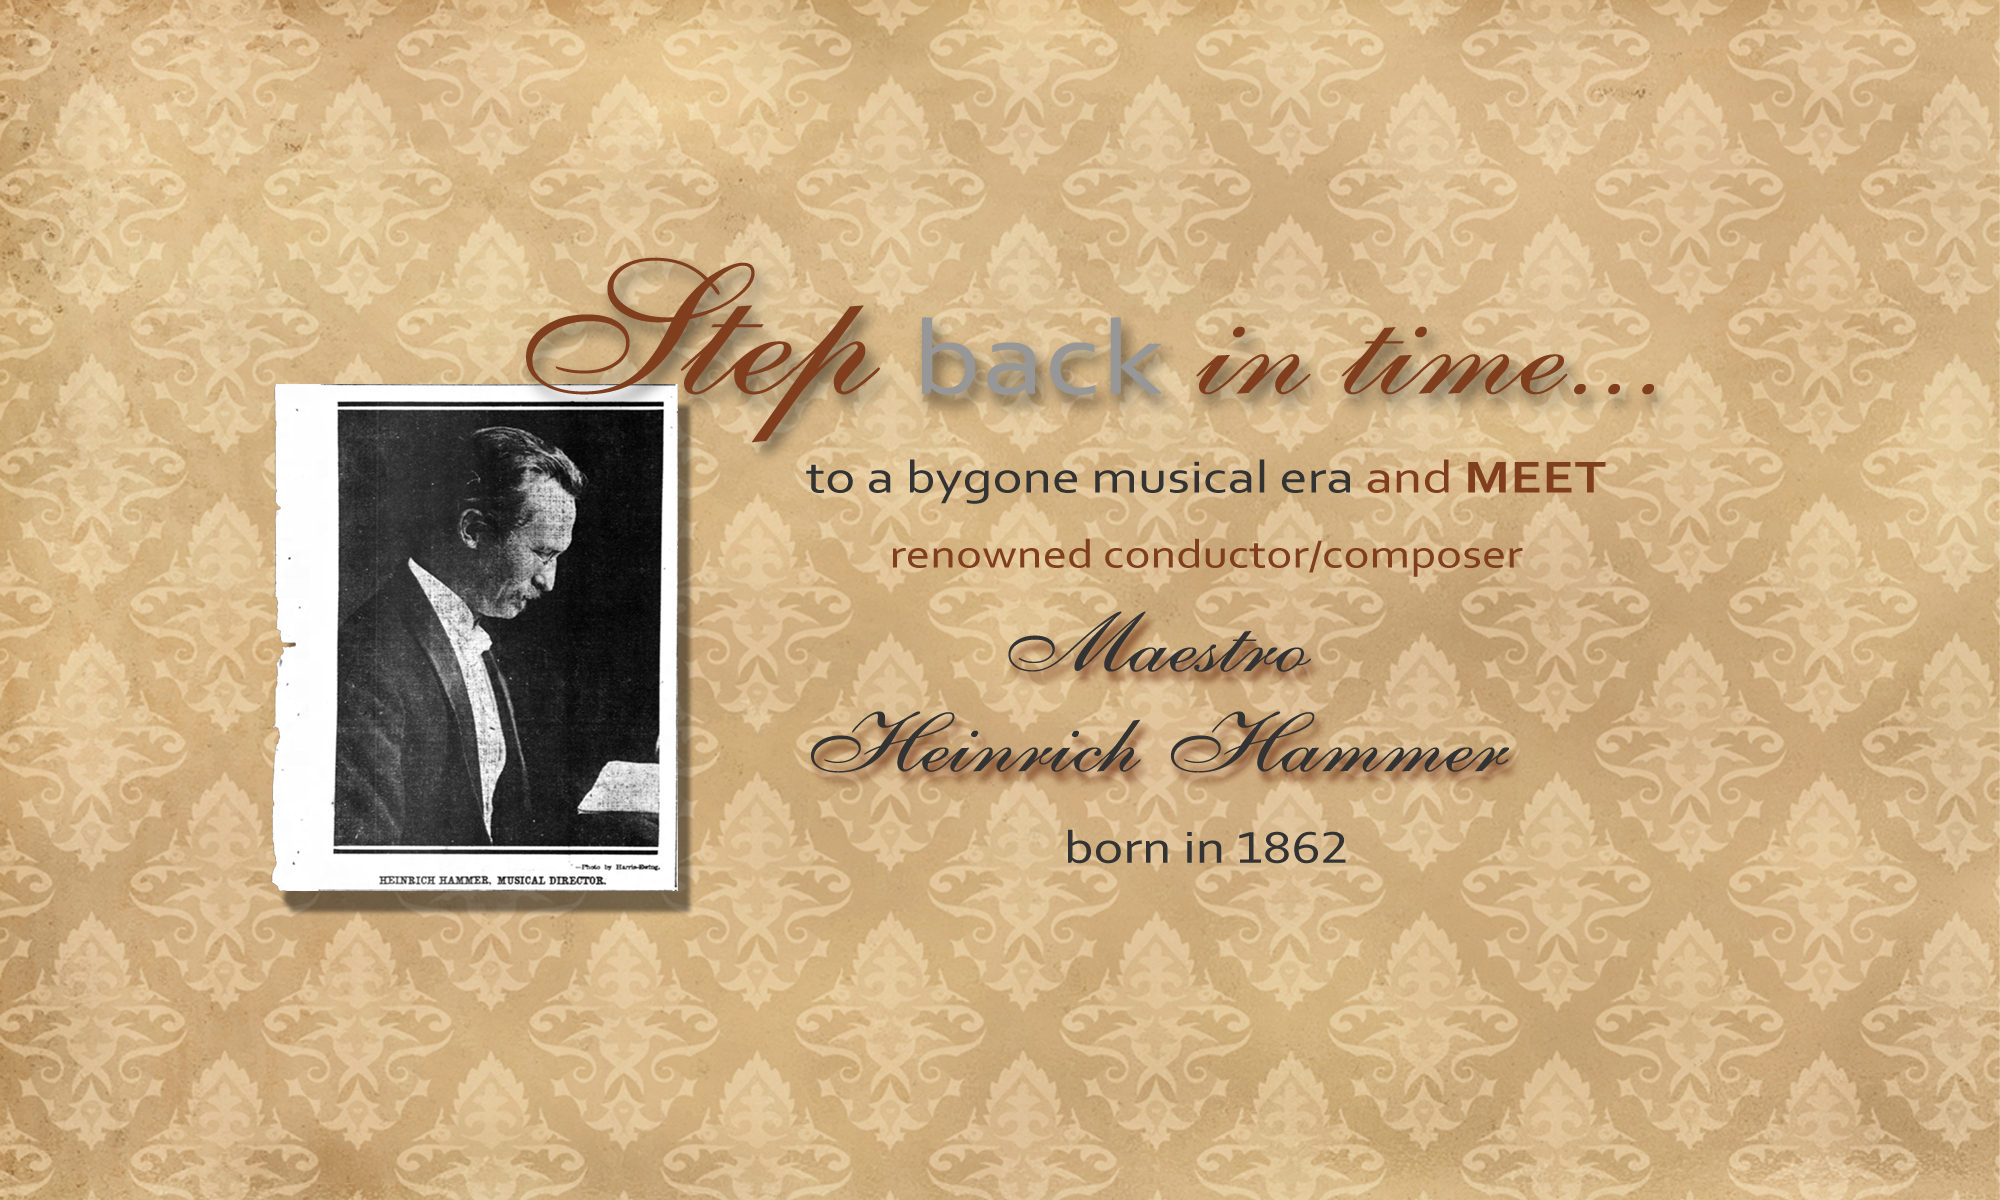 Meet Maestro Heinrich Hammer, 1862-1954